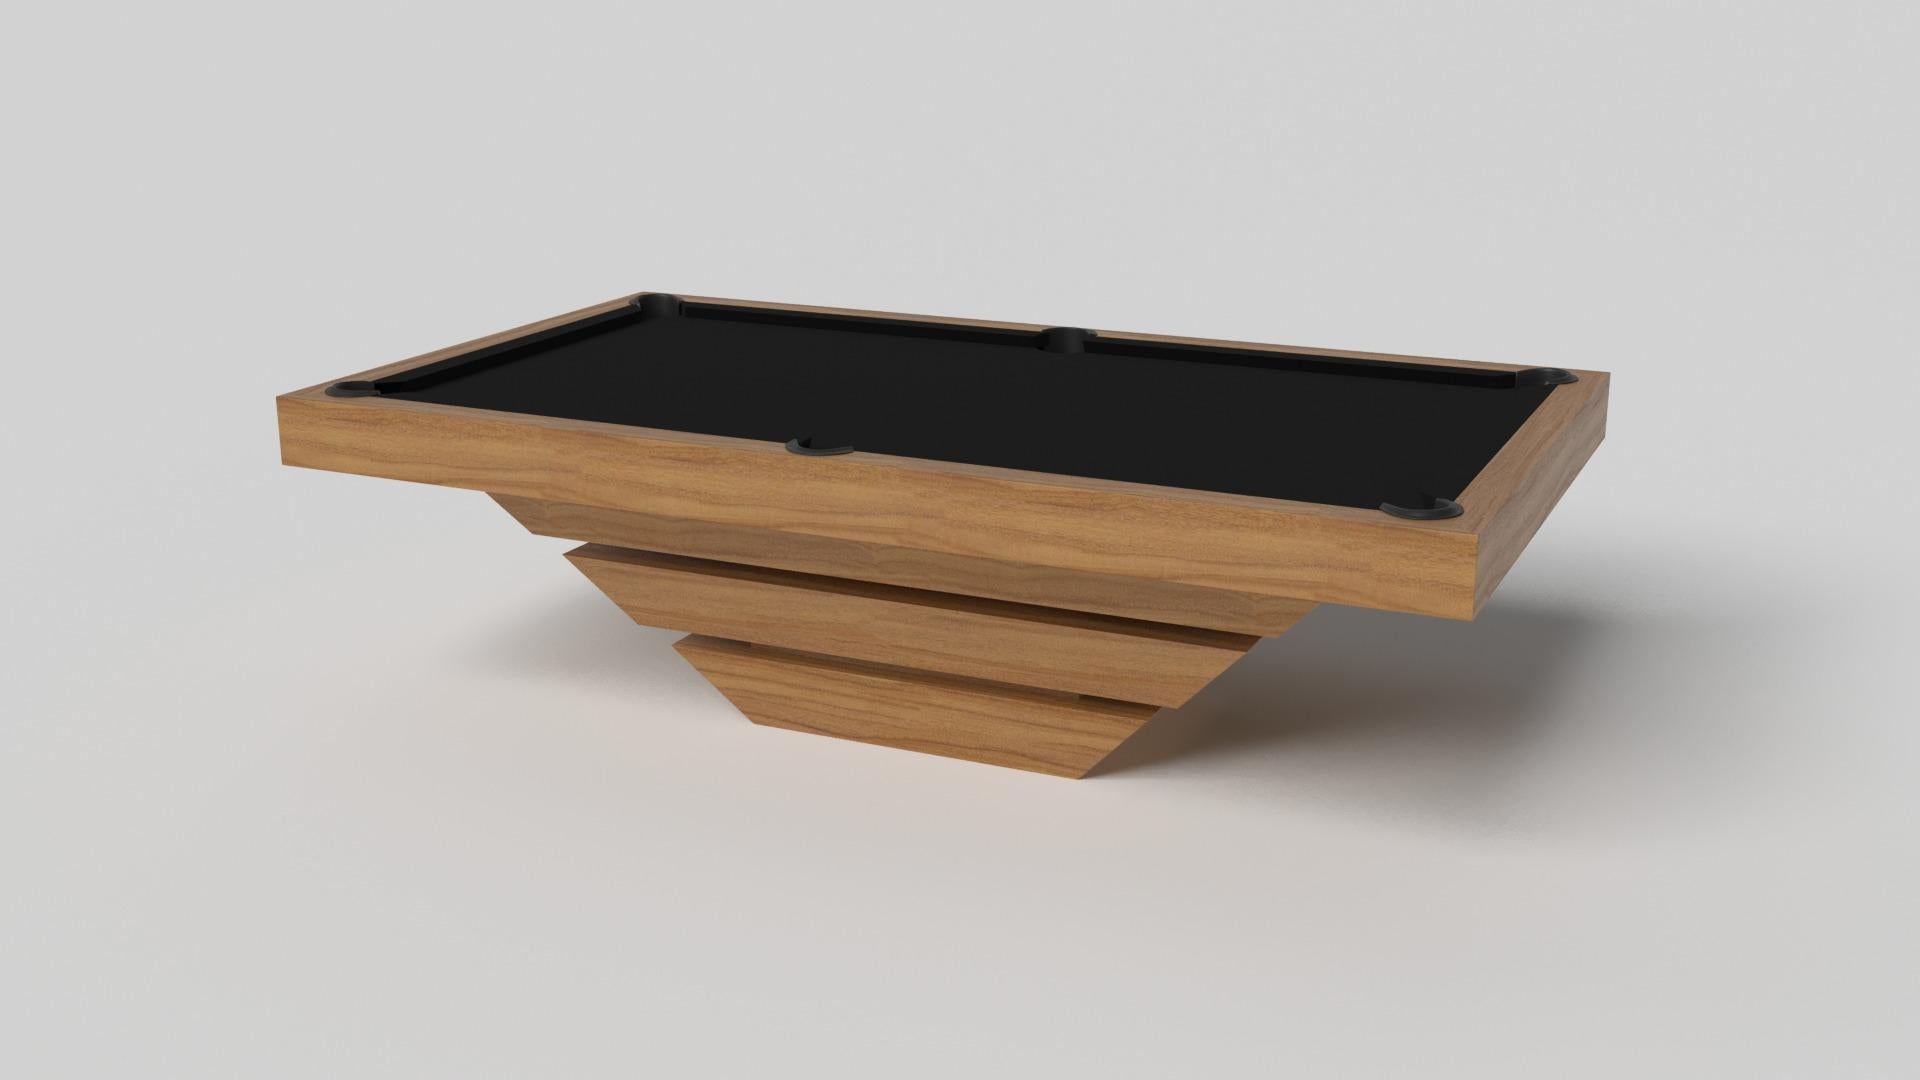 Drei massive Metallteile scheinen um einen verborgenen Mittelboden zu schweben und machen den Louve-Billardtisch in Chrom zu einem unserer verblüffendsten Designs. Dieser moderne Spieltisch ist aus robustem Metall gefertigt und mit einer